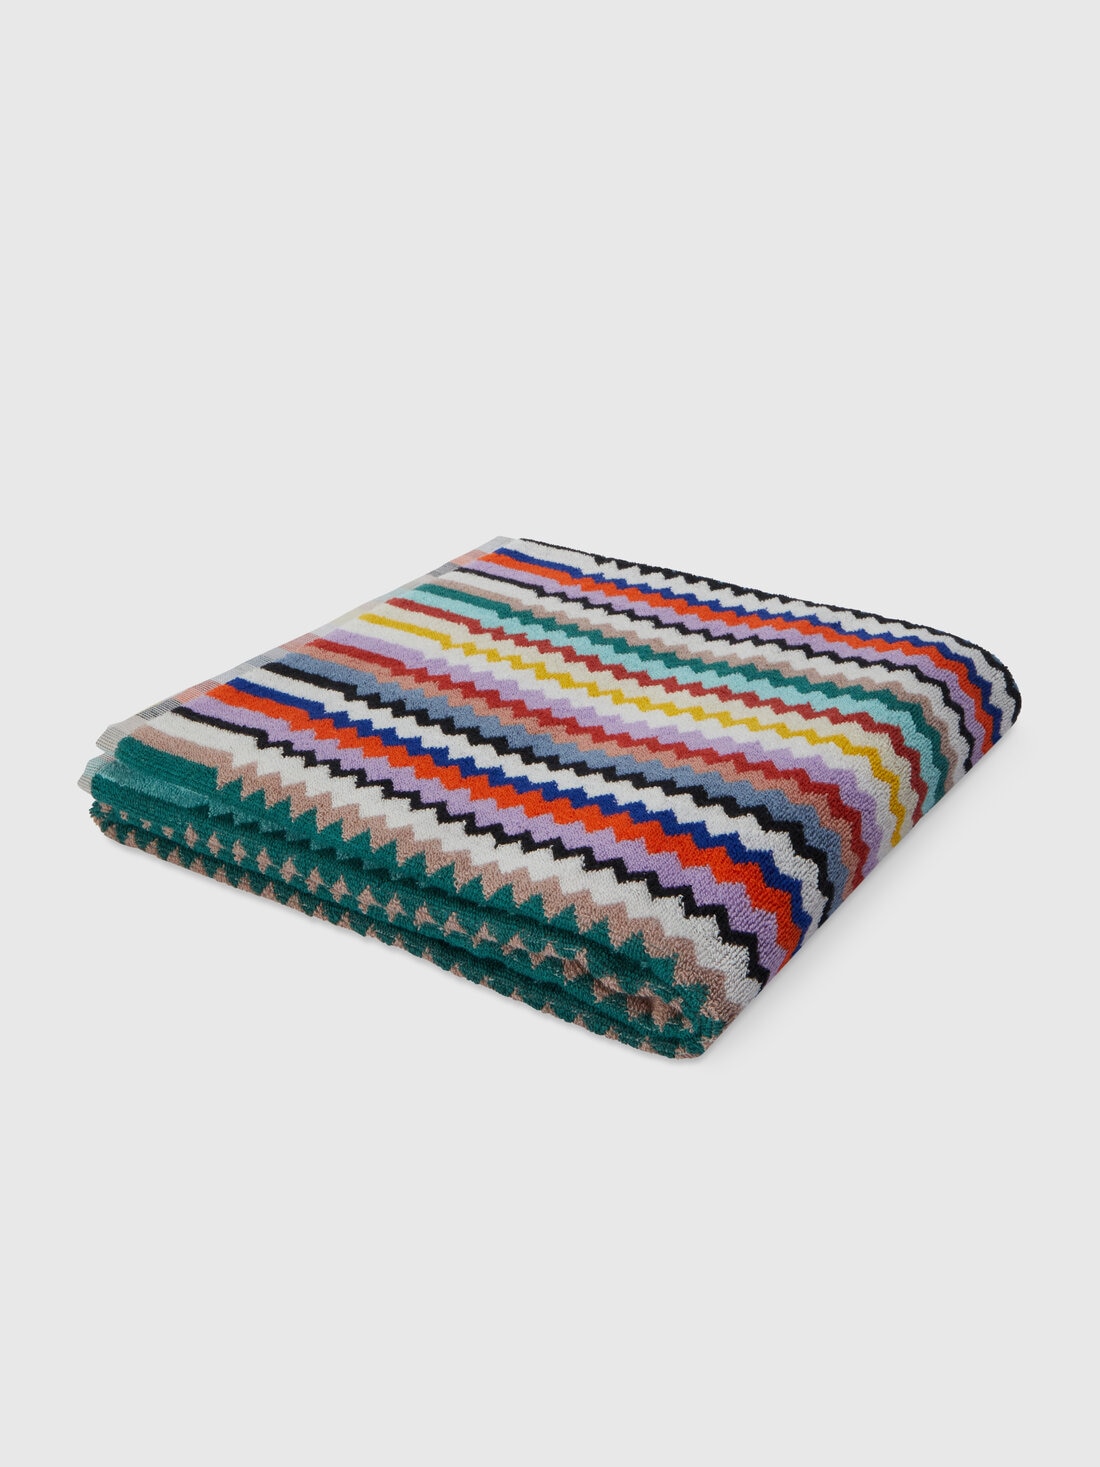 Riverbero 150x100 cm bath towel in zigzag cotton terry cloth , Multicoloured  - 8053147105307 - 0